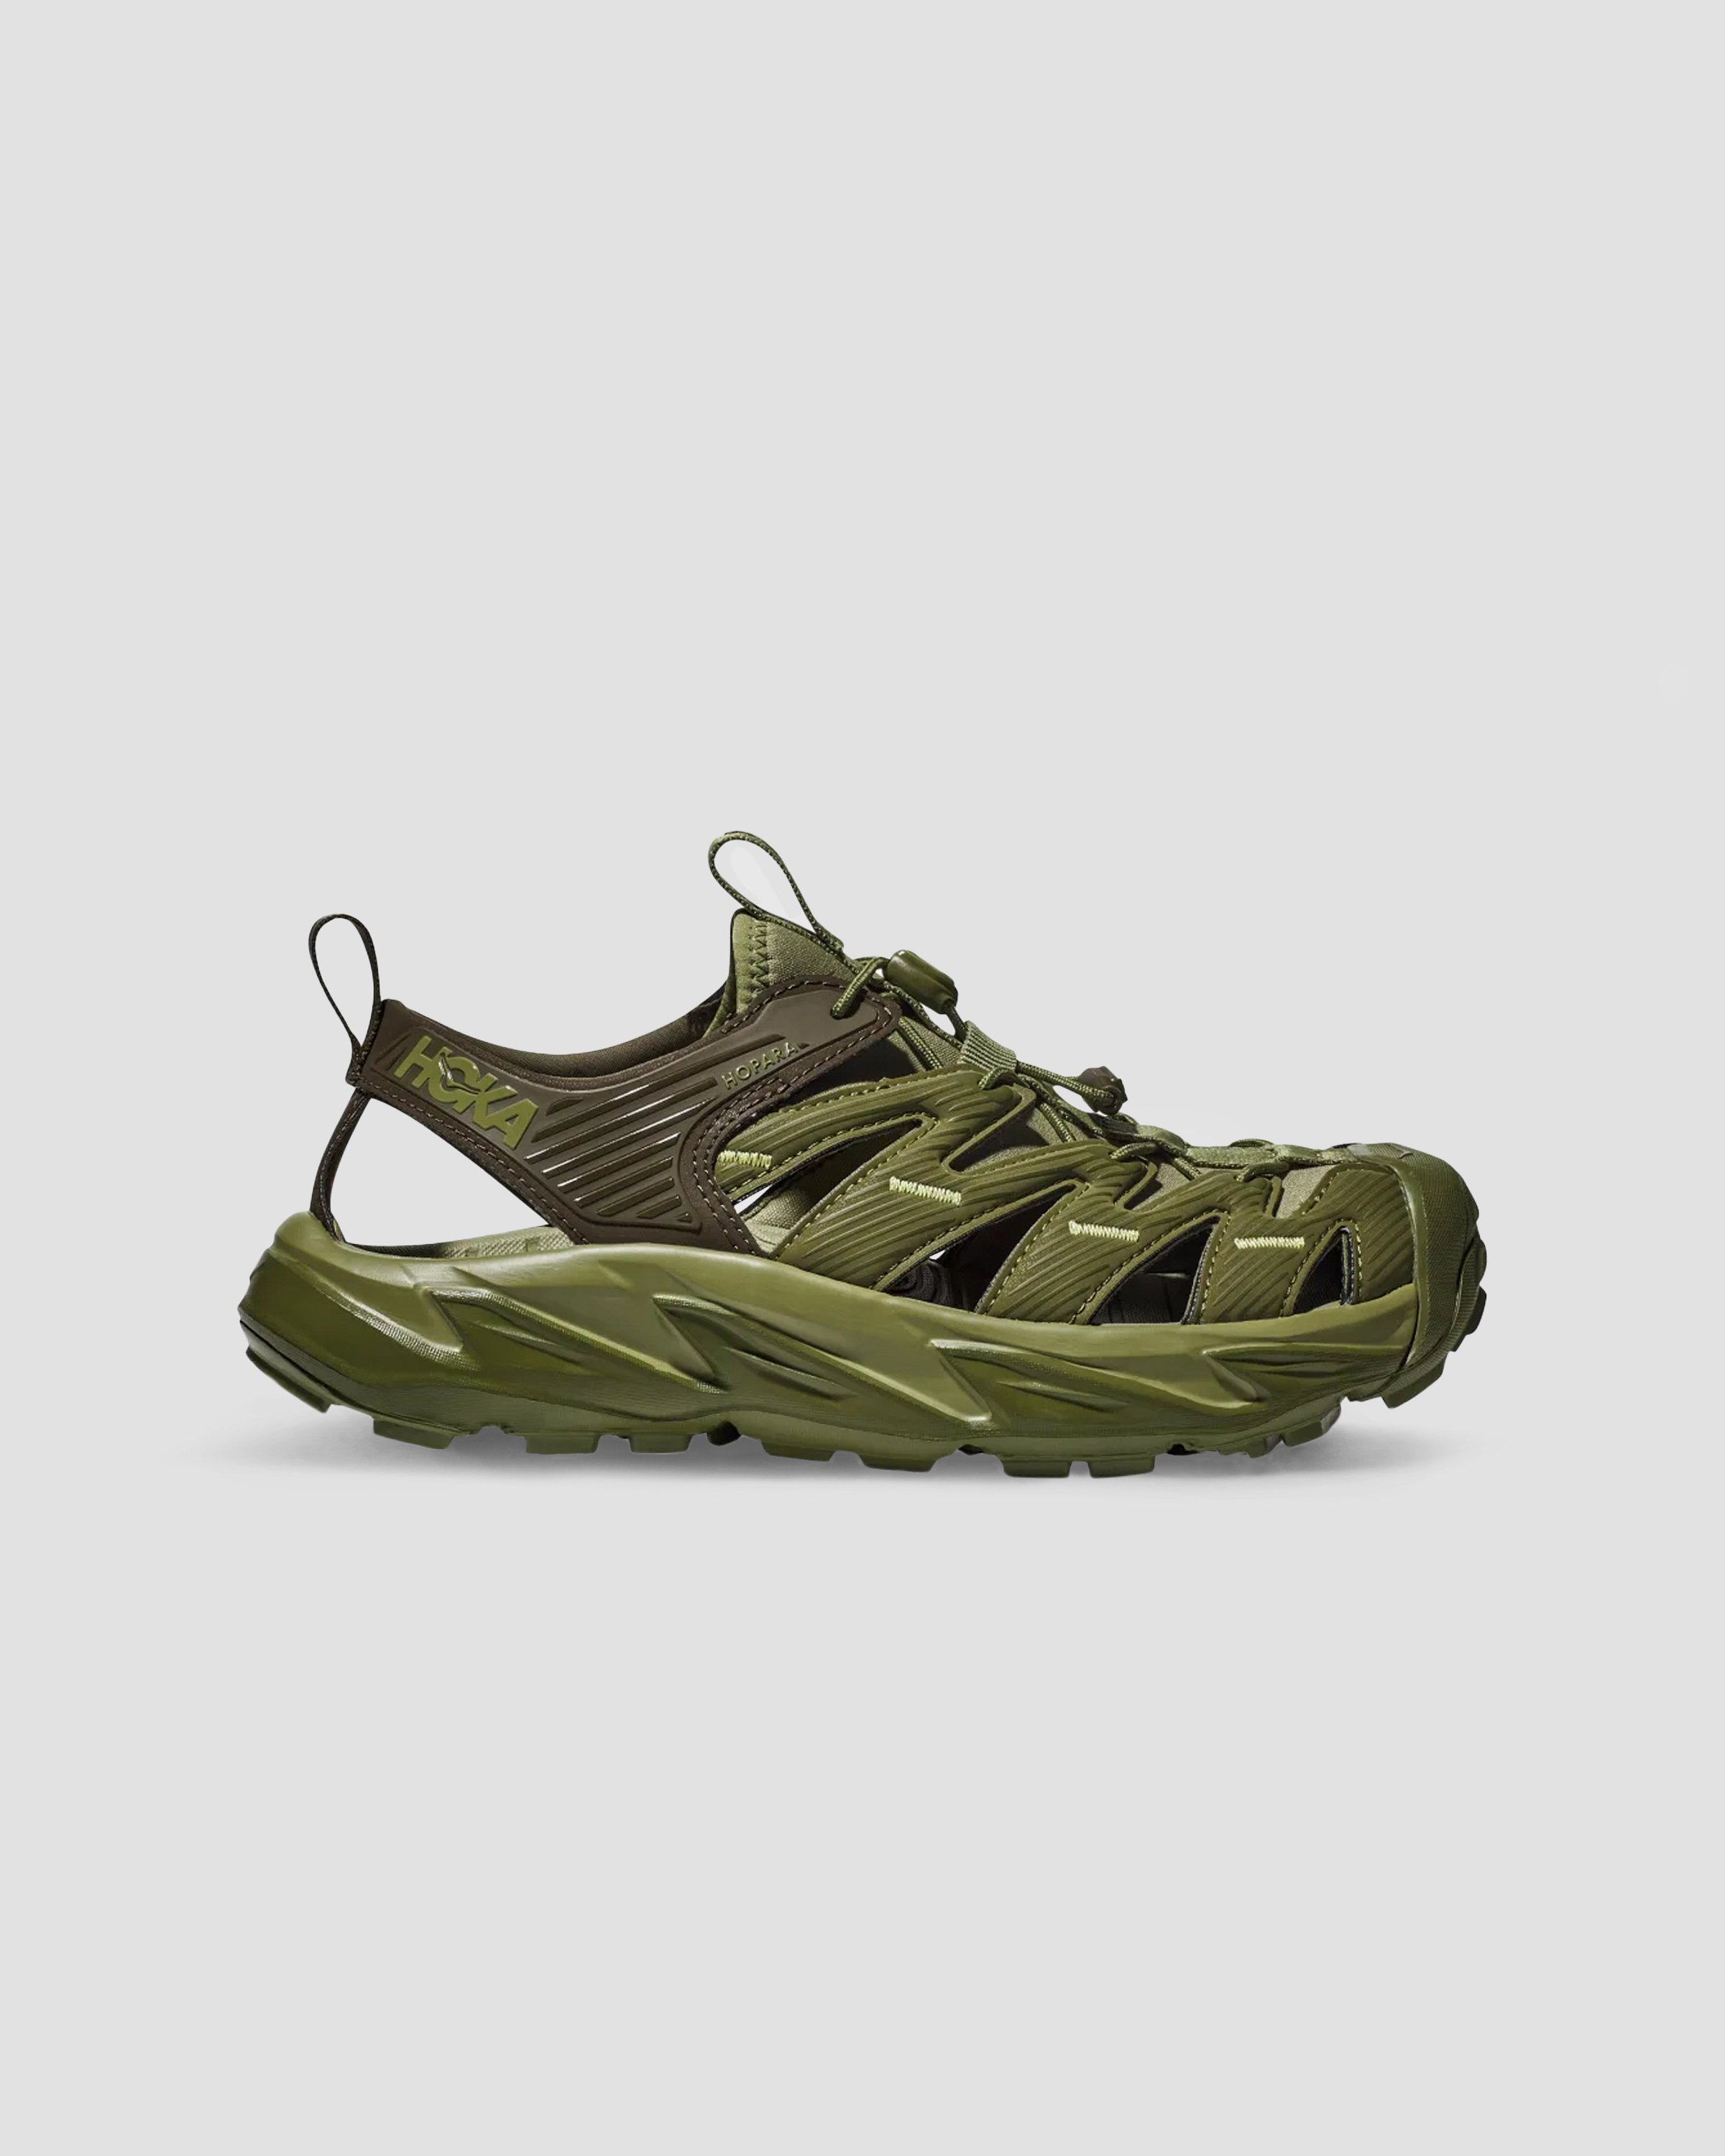 HOKA - U HOPARA - Footwear - Green - Image 1